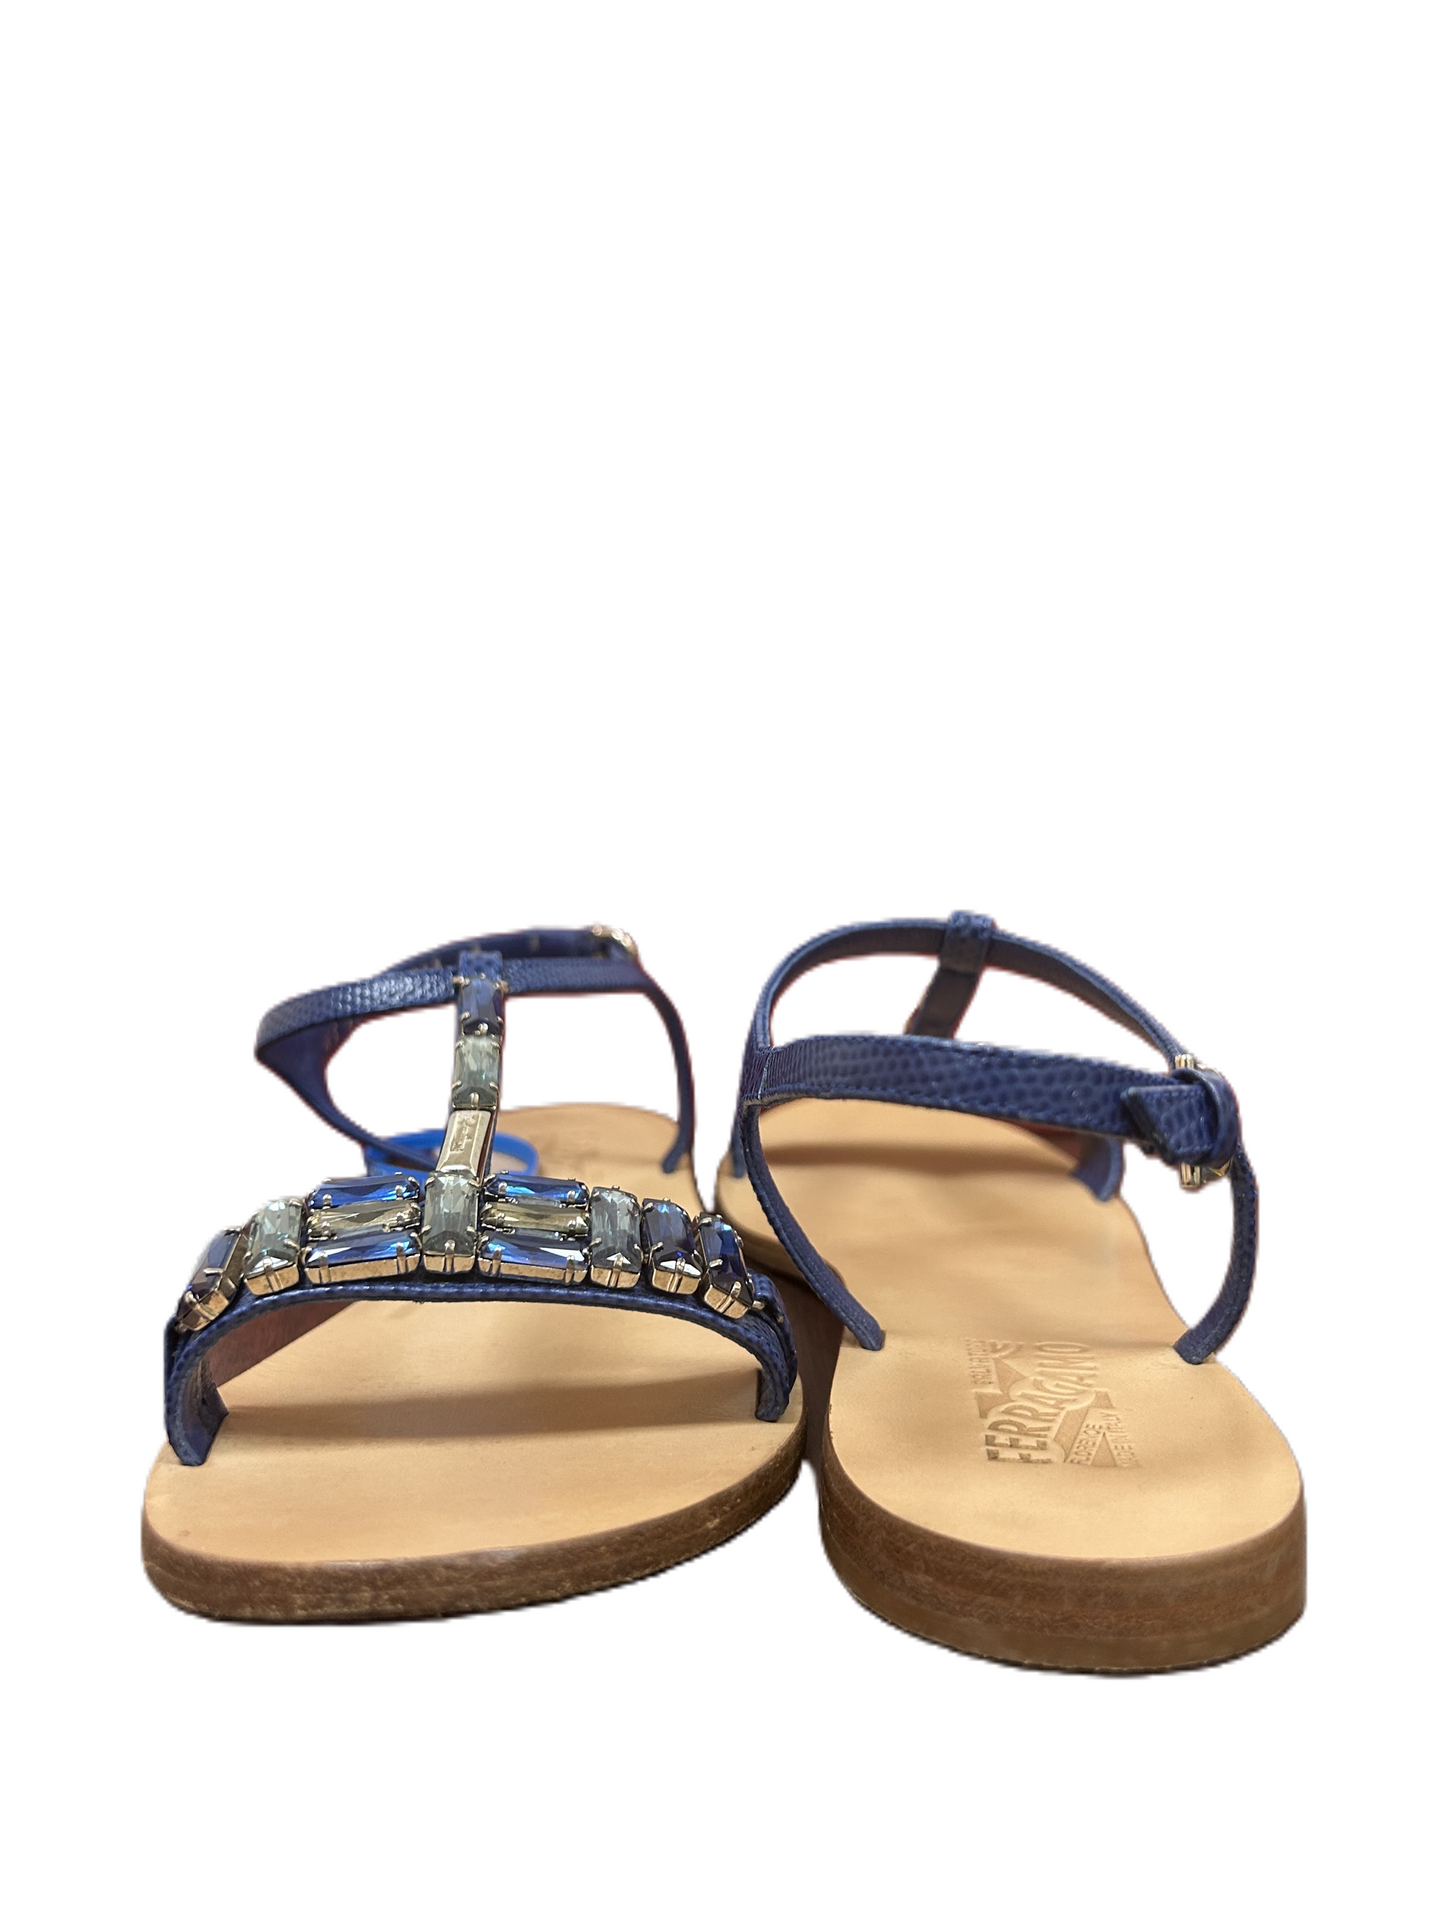 Sandals Luxury Designer By Ferragamo  Size: 8